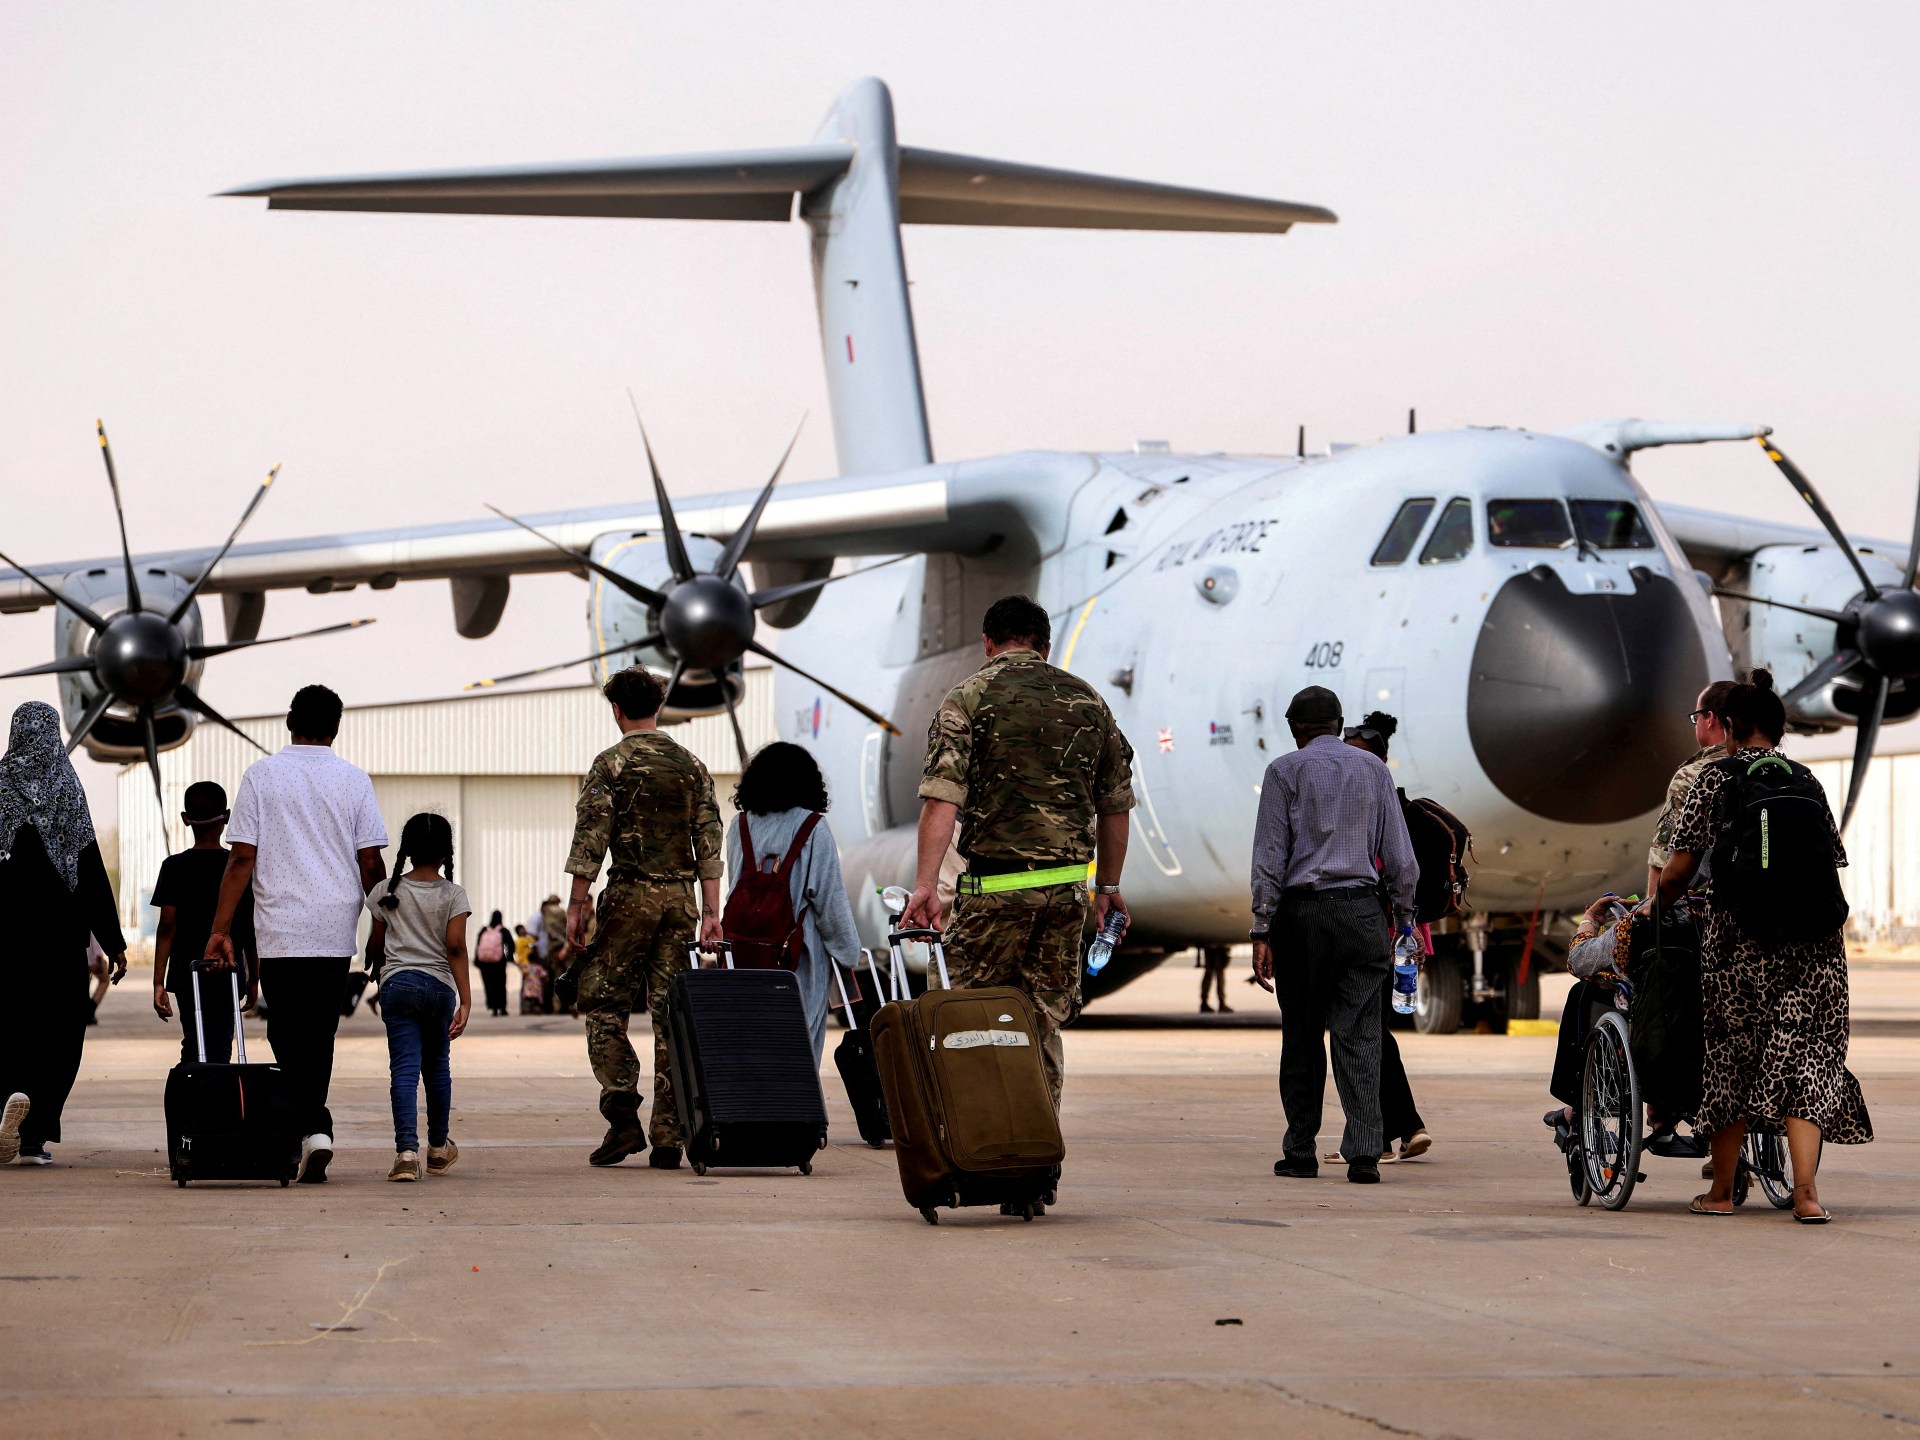 “وادي سيدنا” أكبر قاعدة جوية عسكرية في السودان | الموسوعة – البوكس نيوز